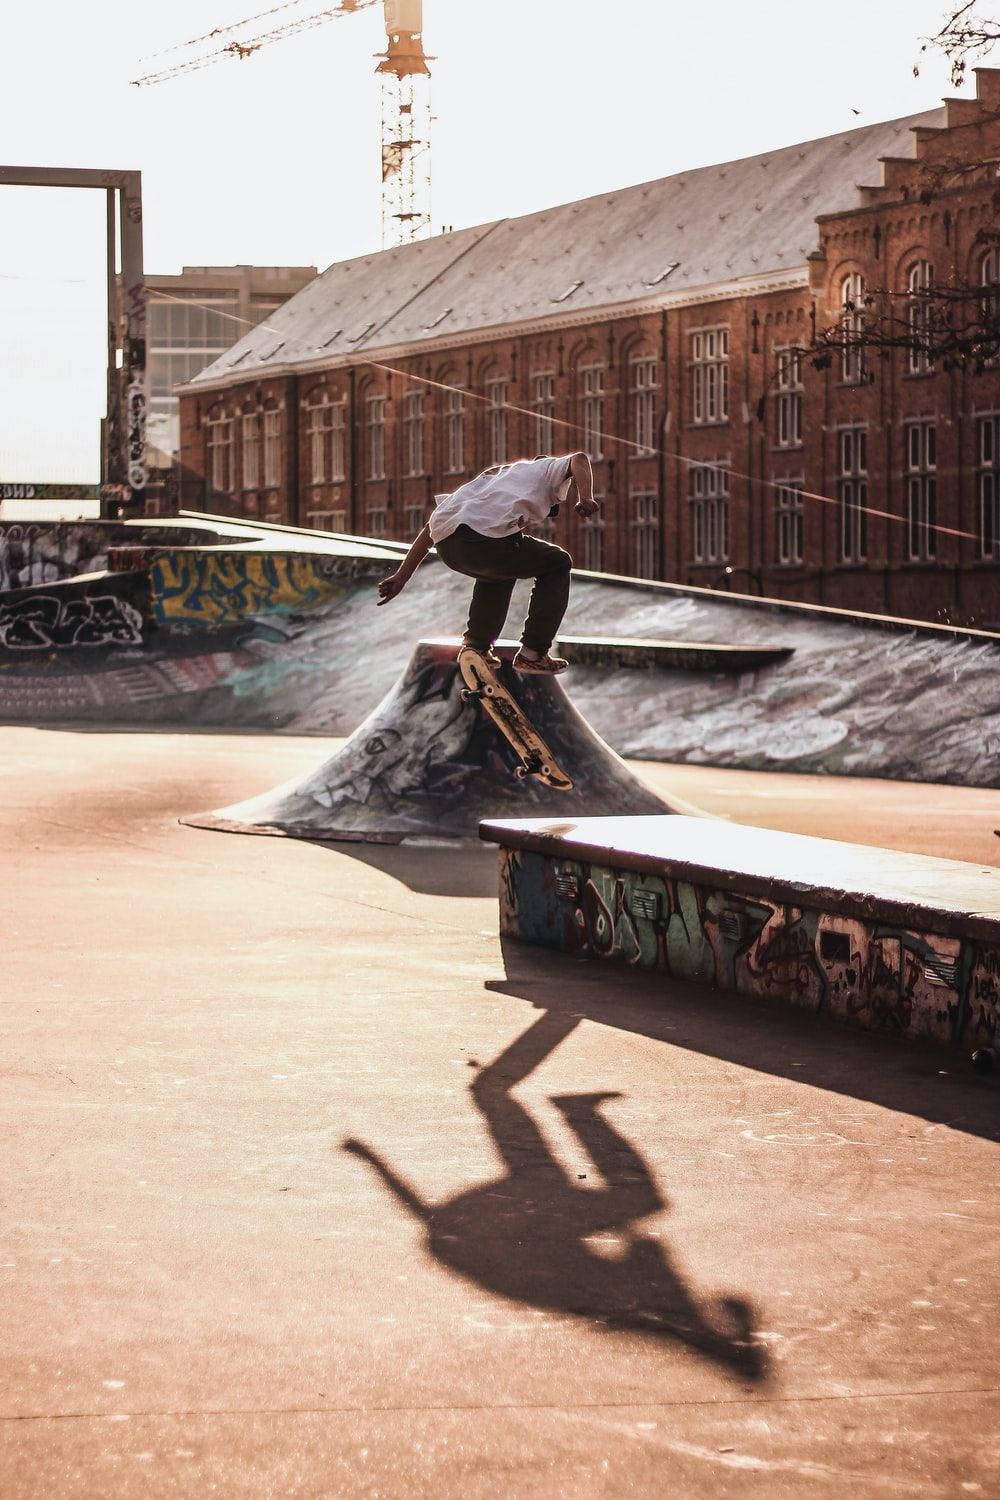 Aesthetic Skateboard Park